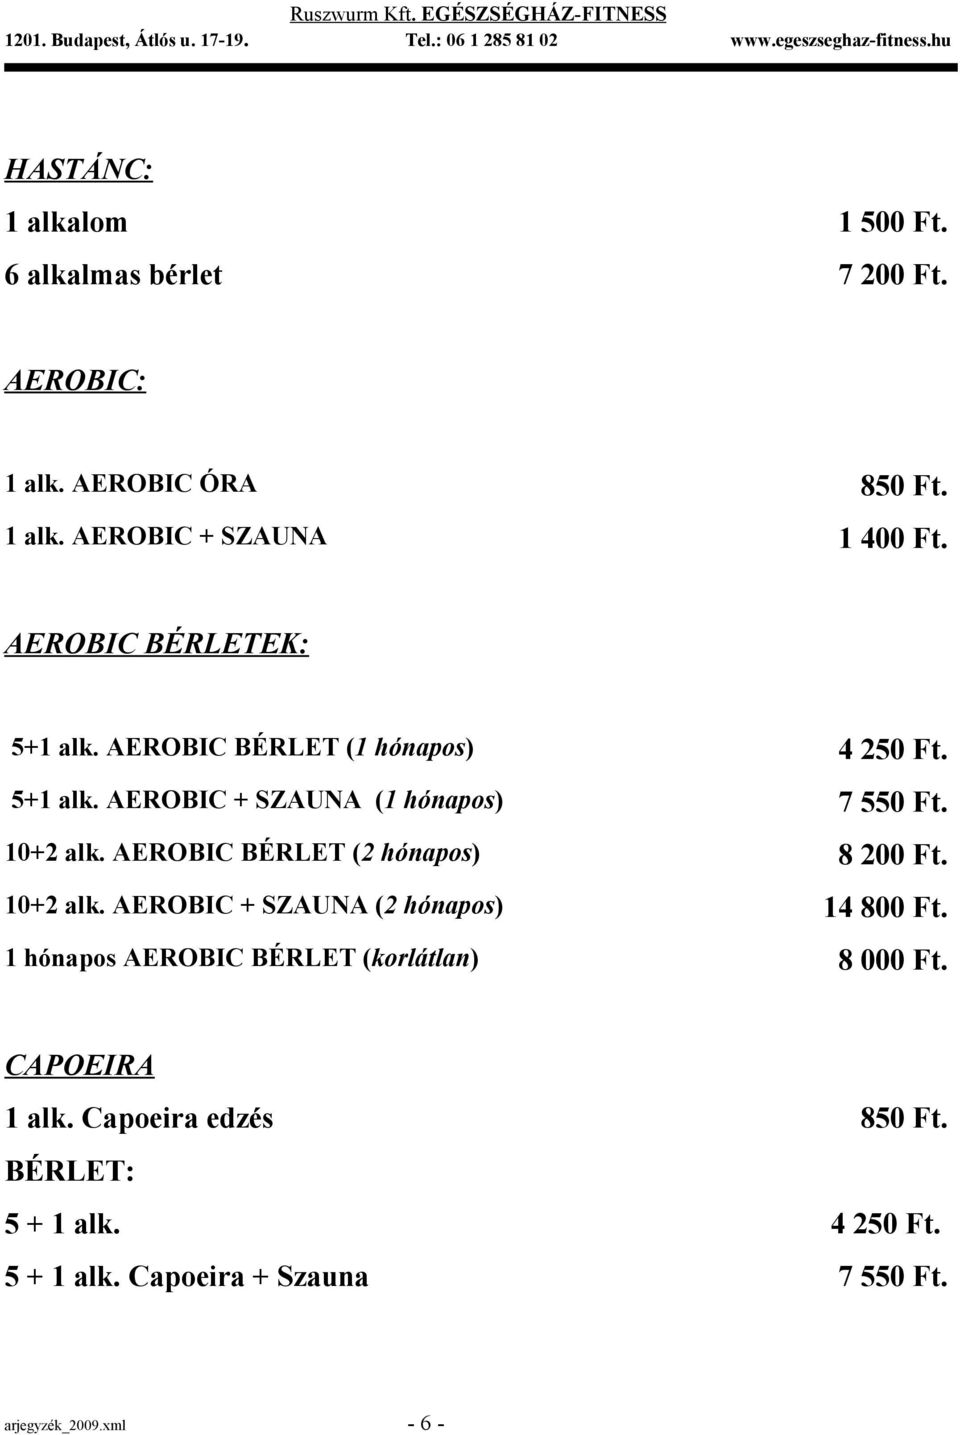 AEROBIC BÉRLET (2 hónapos) 8 200 Ft. 10+2 alk. AEROBIC + SZAUNA (2 hónapos) 14 800 Ft.